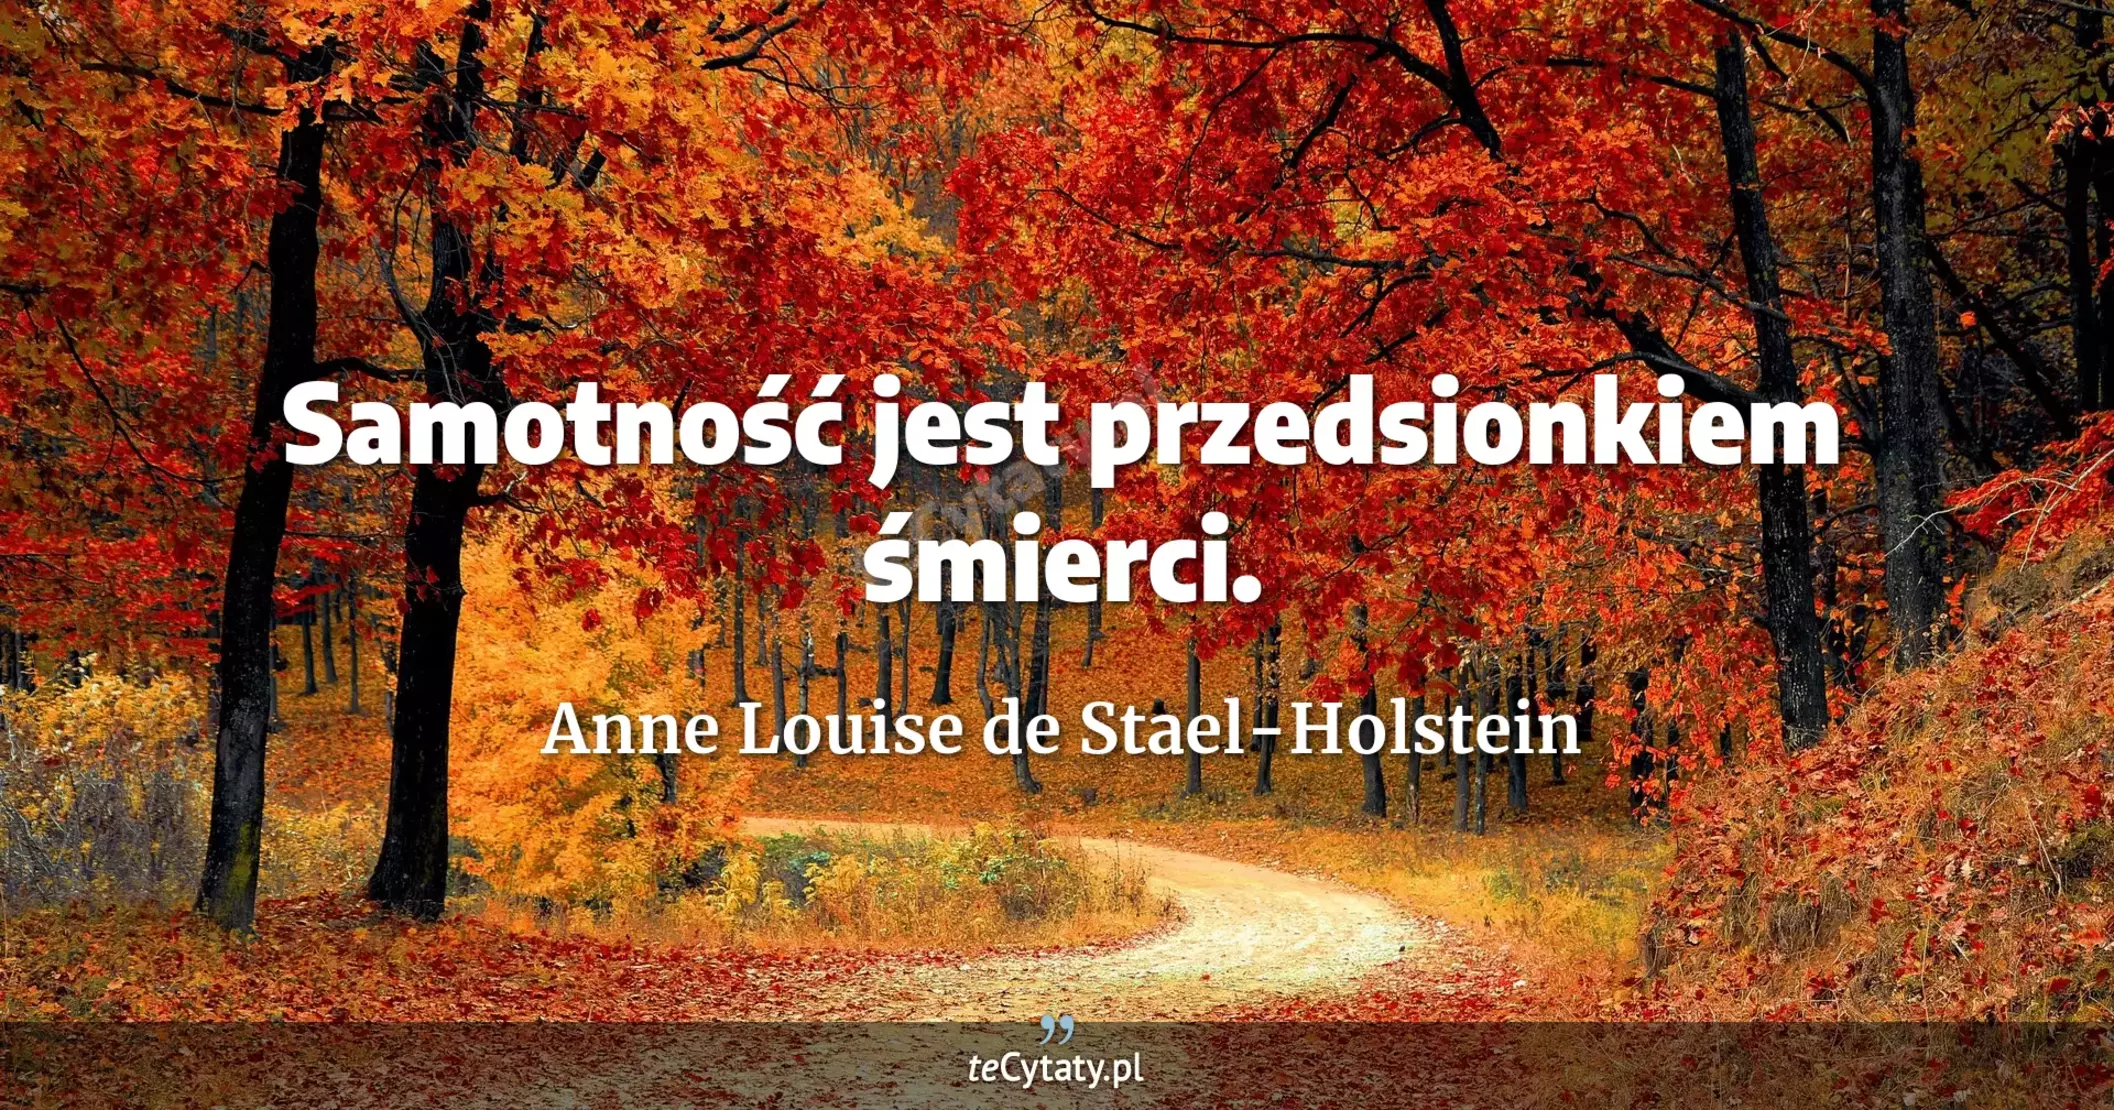 Samotność jest przedsionkiem śmierci. - Anne Louise de Stael-Holstein